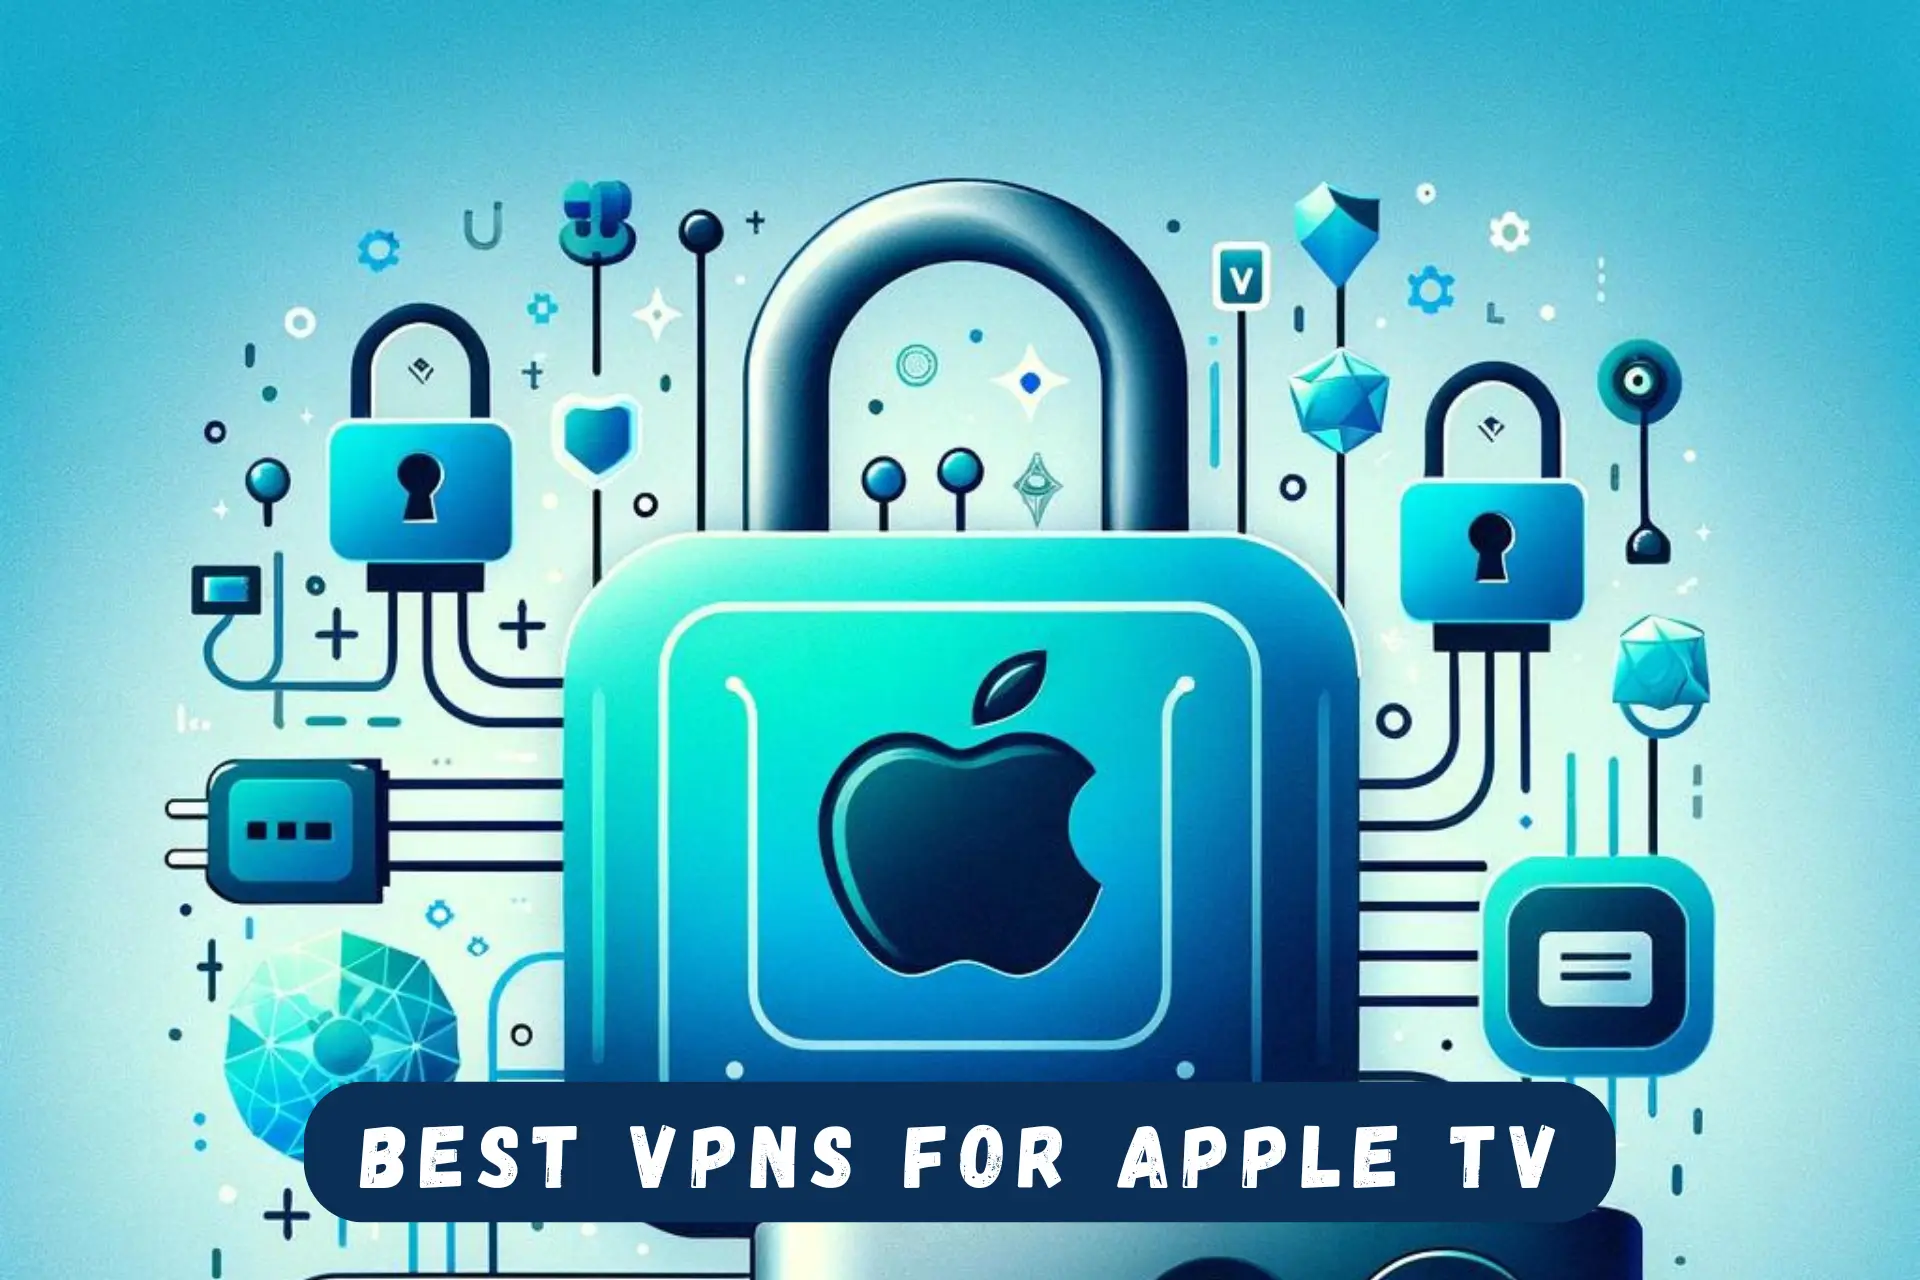 BEST VPN FOR APPLE TV